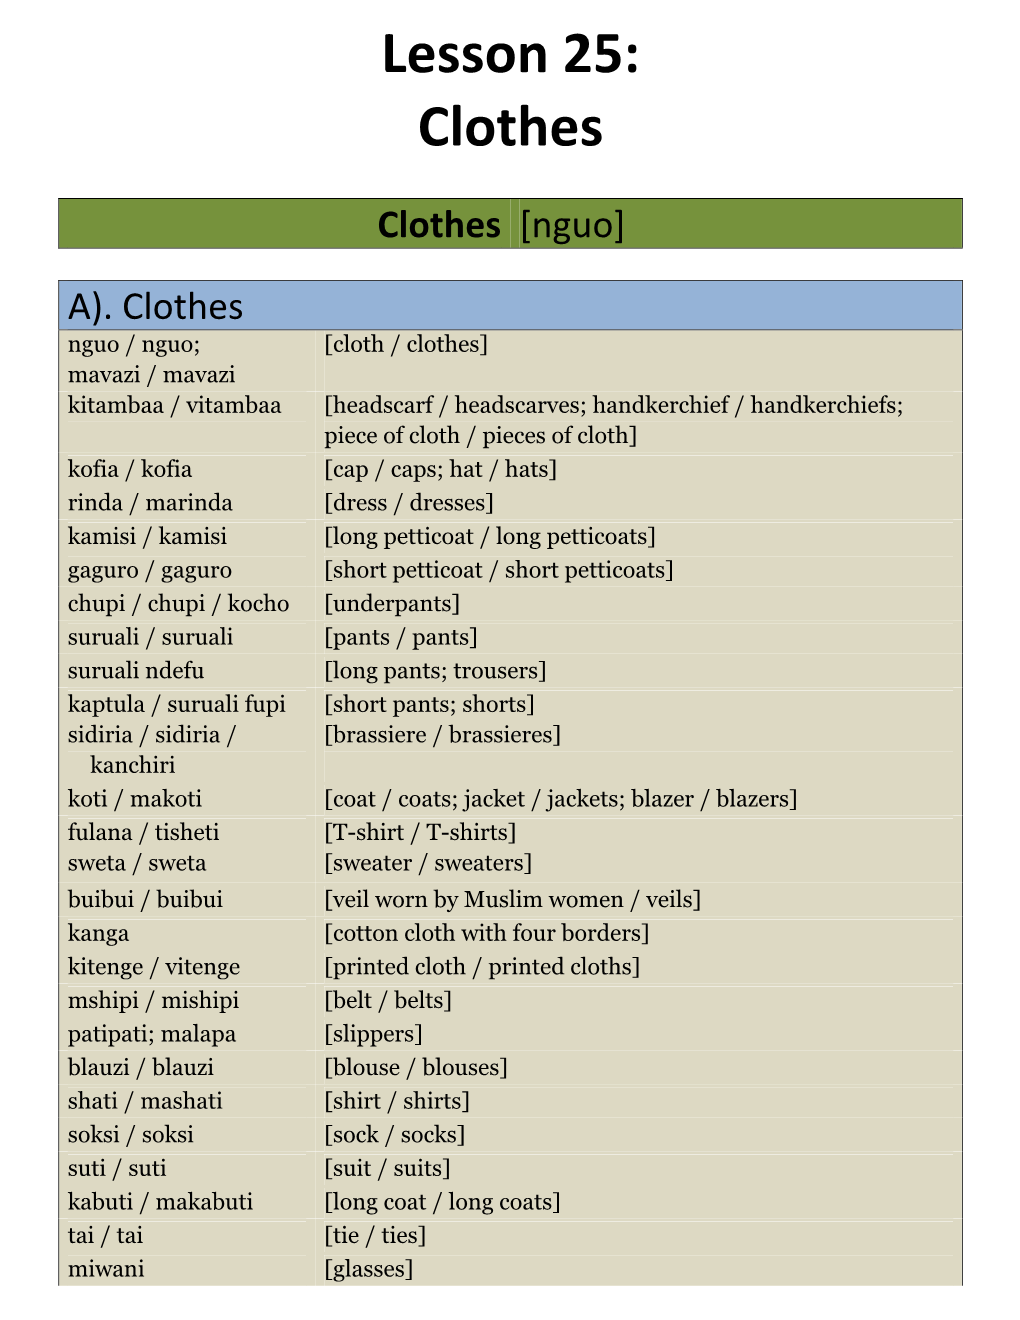 Lesson 25: Clothes